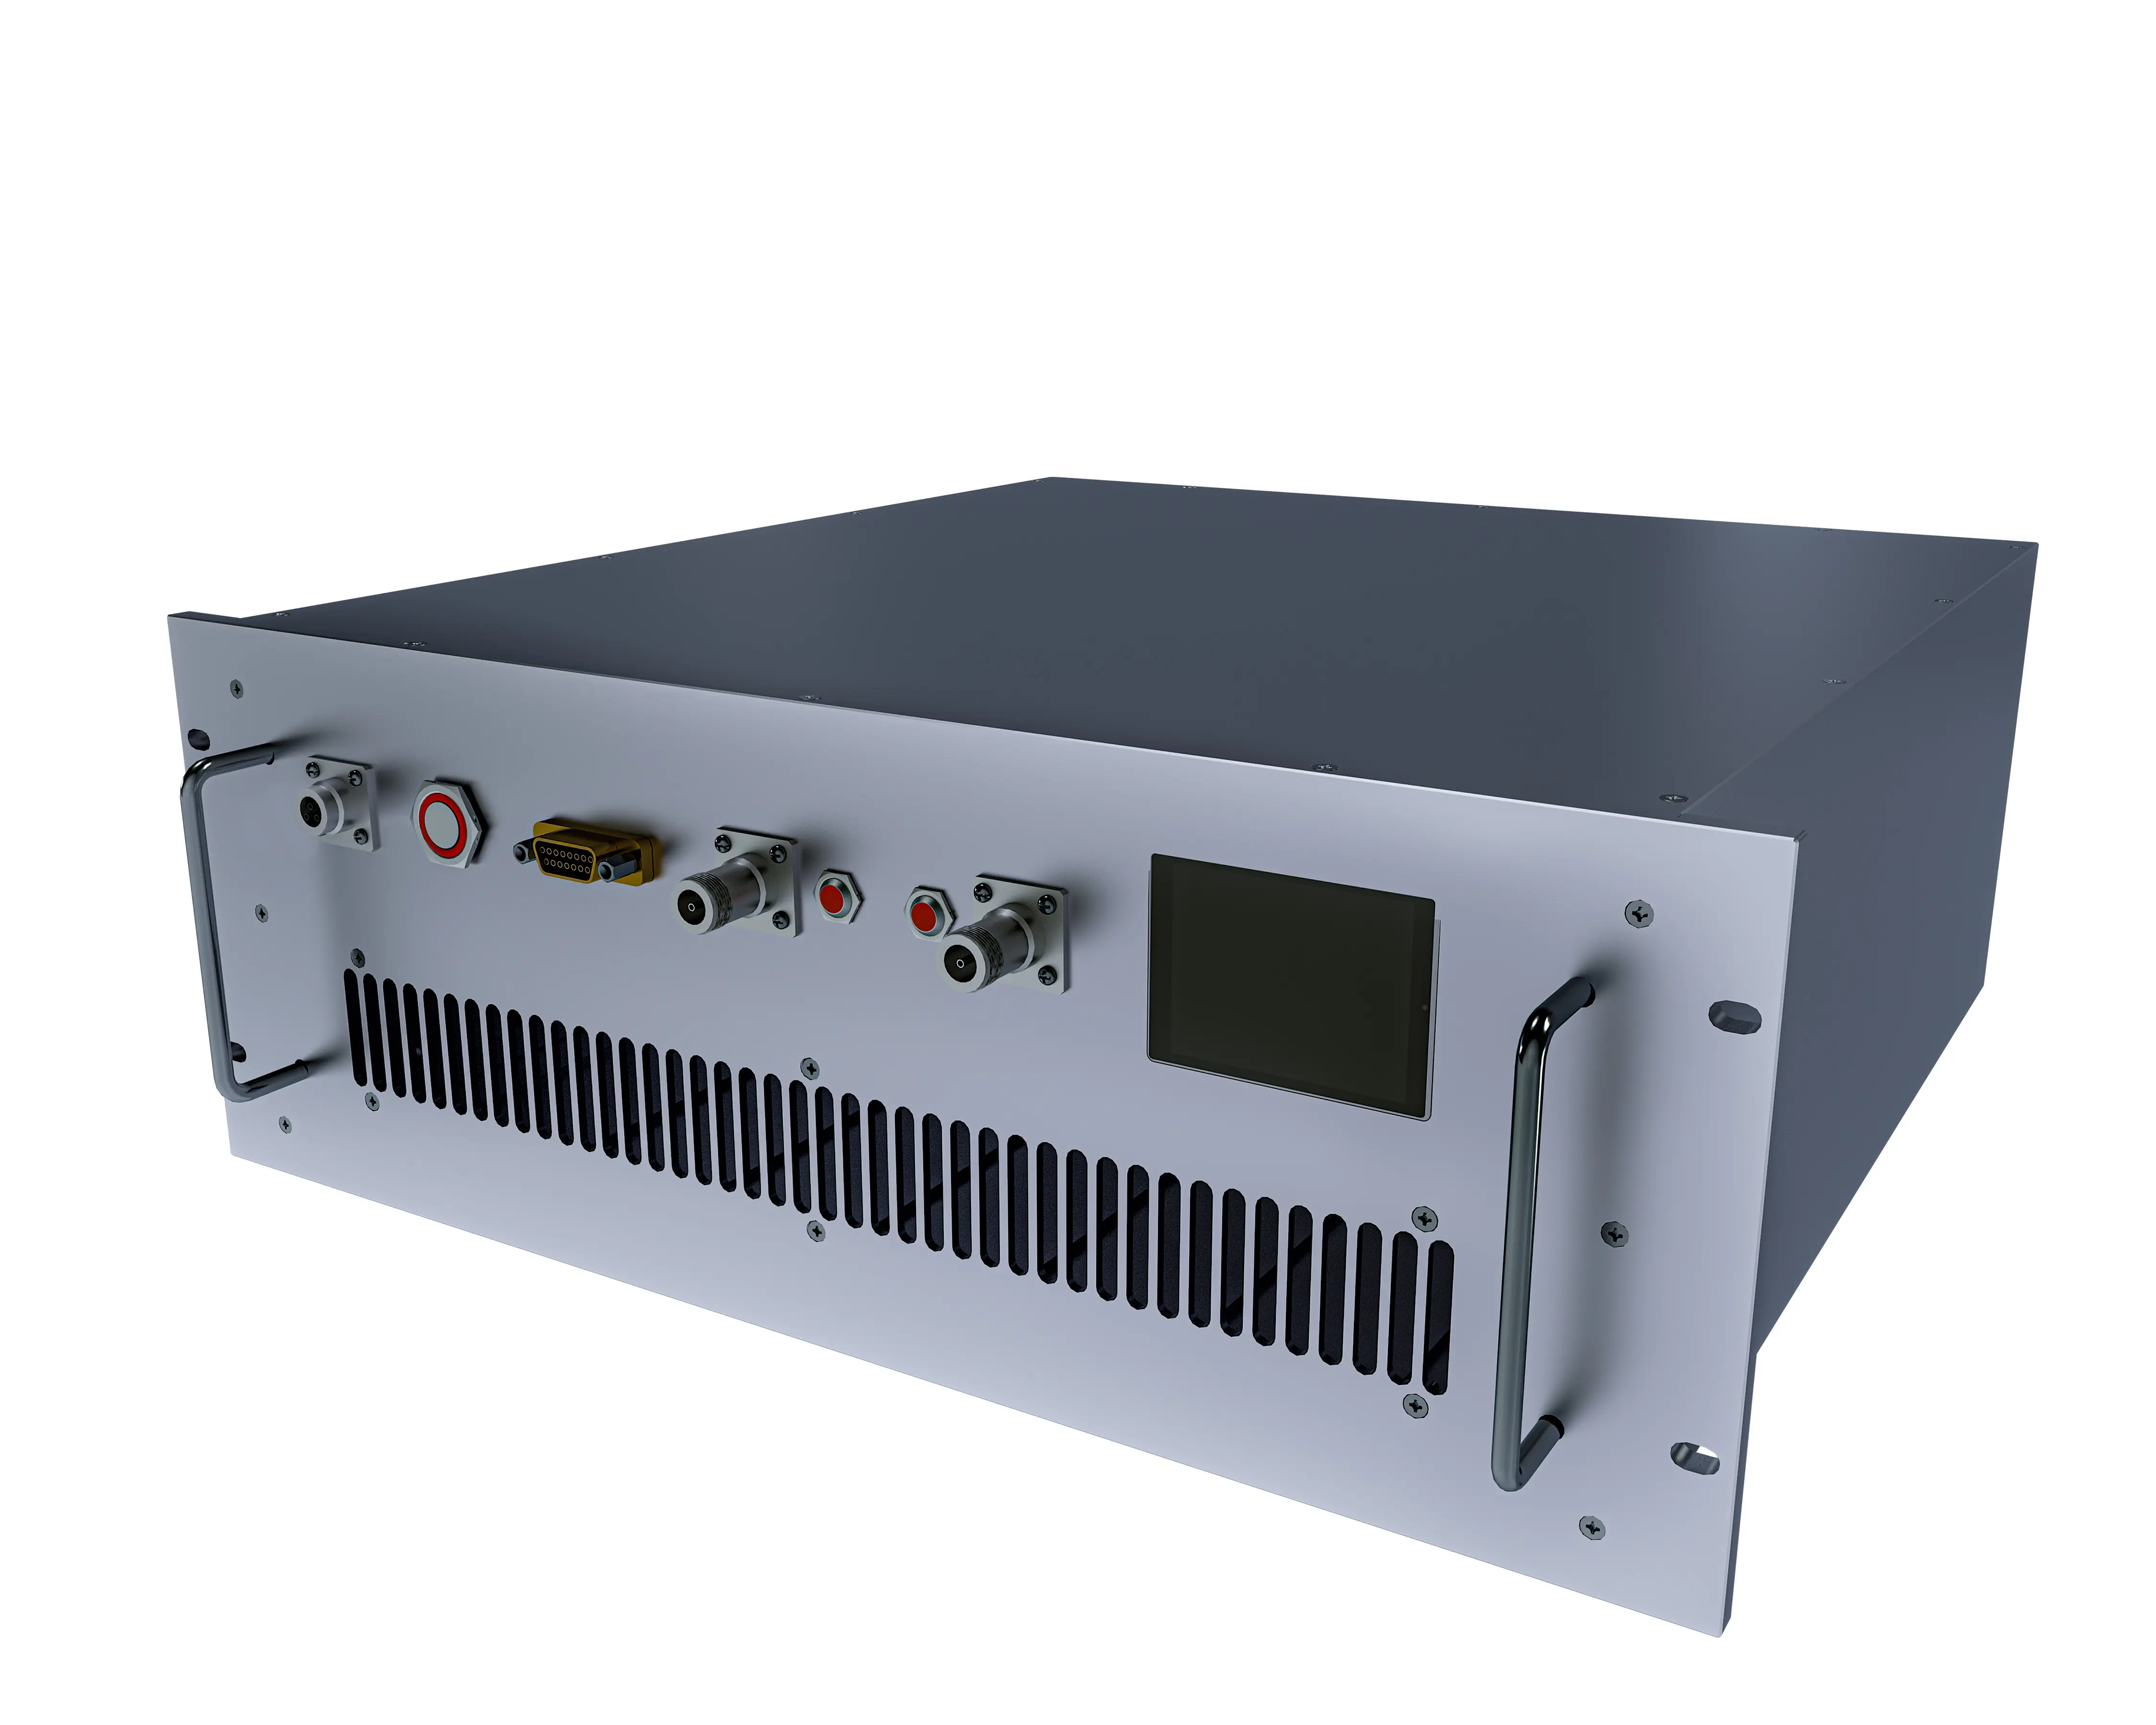 Y 5700-5800 MH200 W IGH GH ower plipliower ower plimplifier para omcomunicación yystems